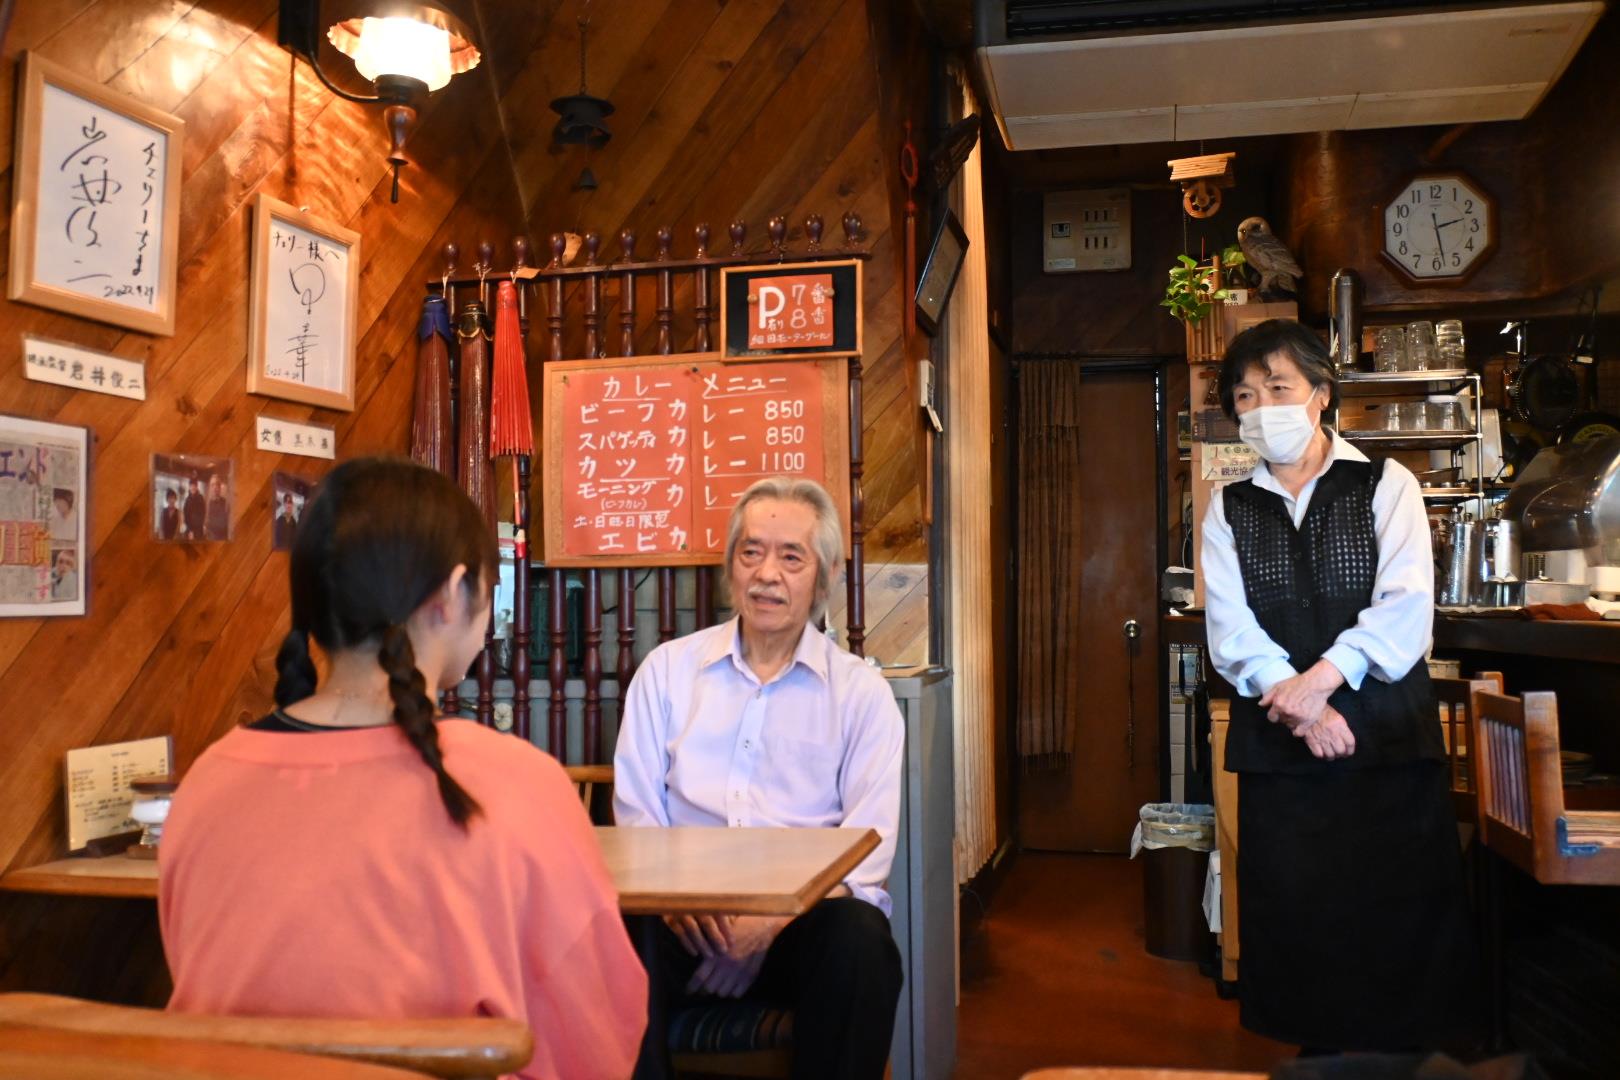 四天王寺大学学生広報スタッフが珈琲館チェリー店主上田さんへインタビューをする様子